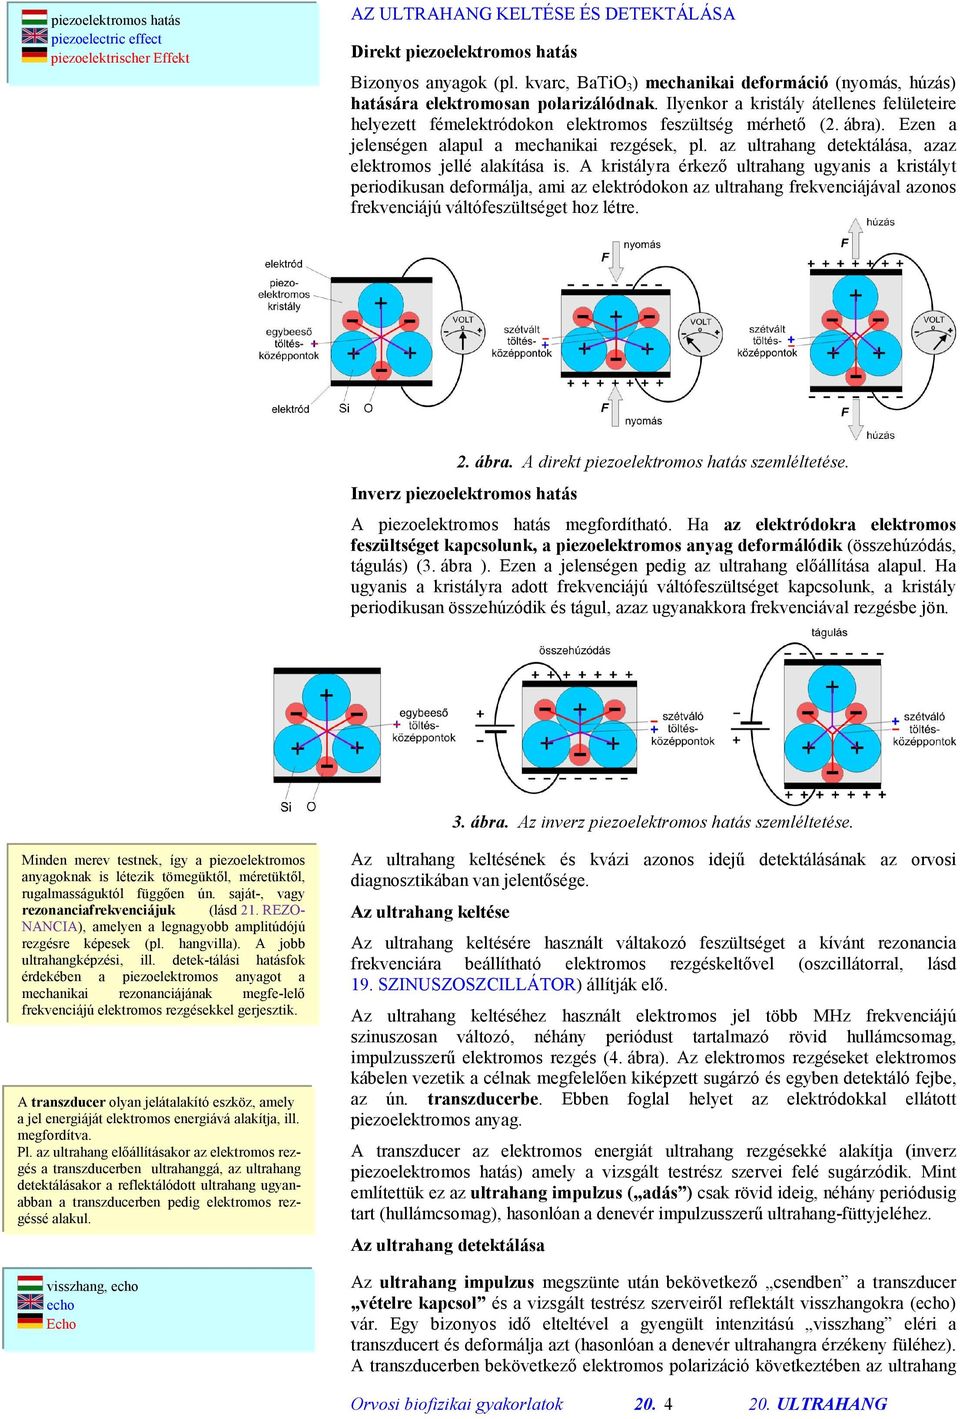 Orvosi biofizikai gyakorlatok - PDF Ingyenes letöltés